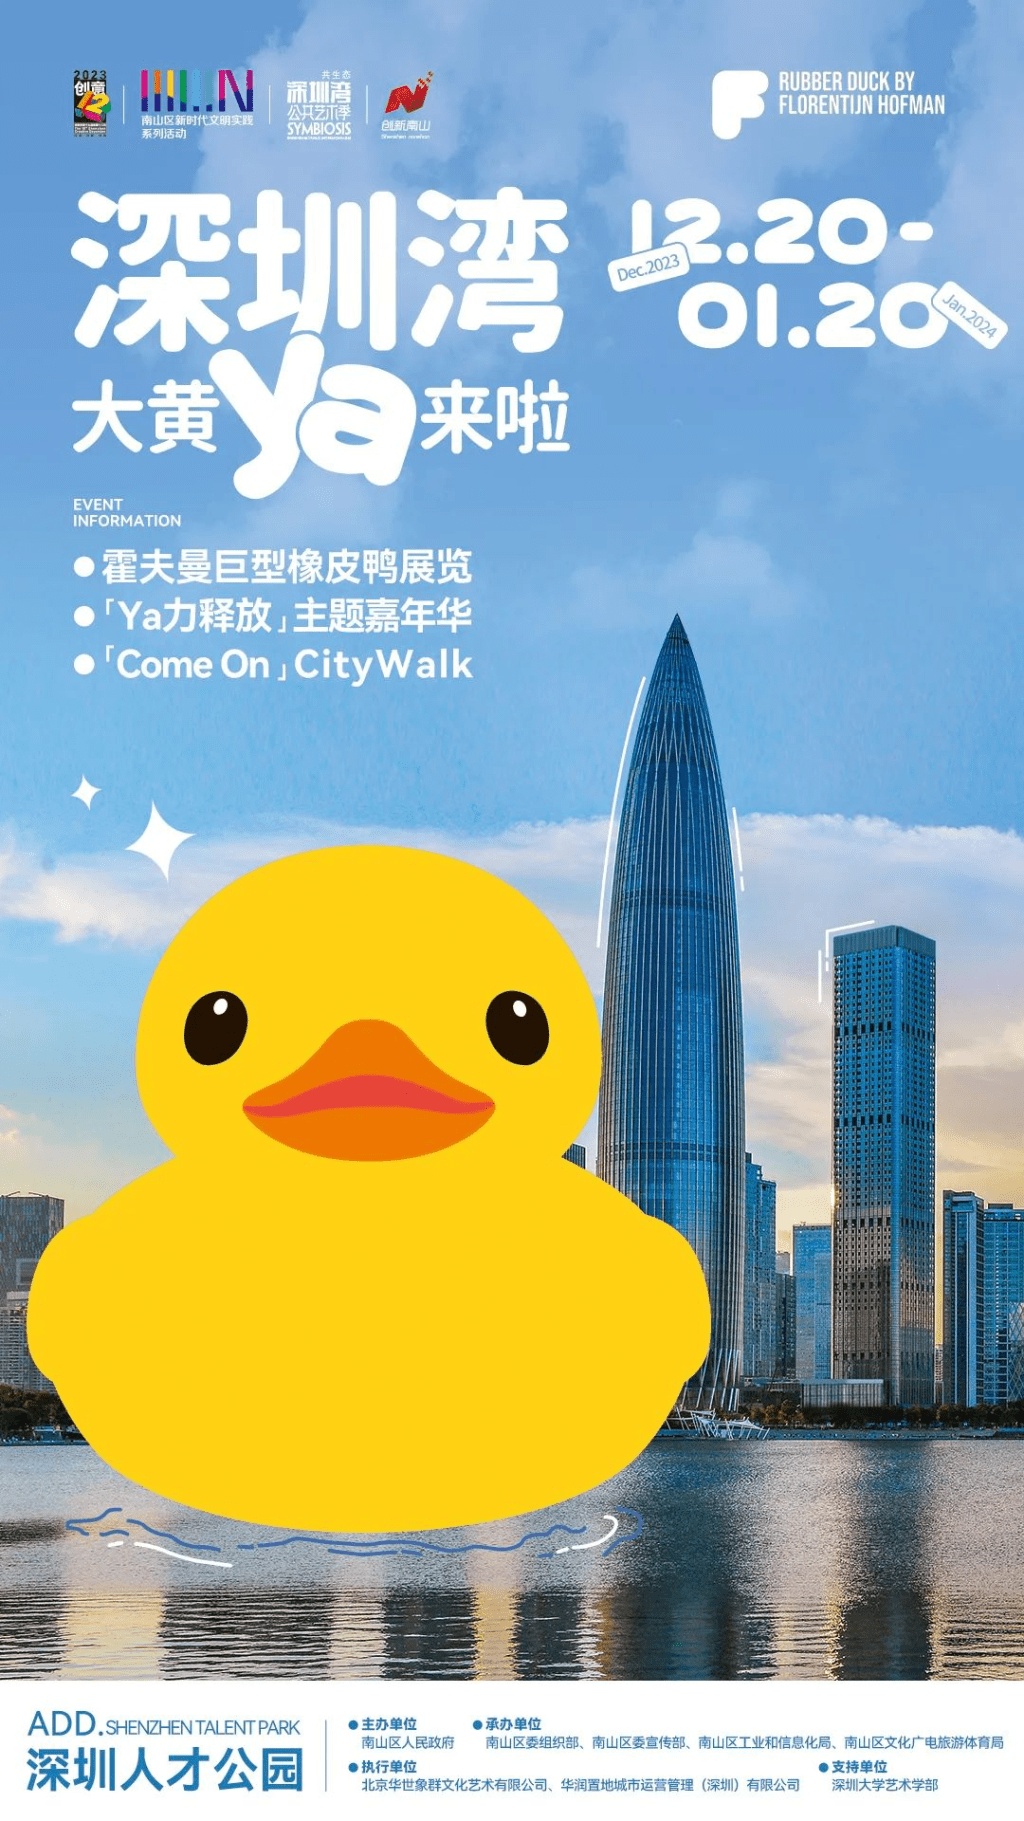 大黃鴨即將在深圳灣展出。